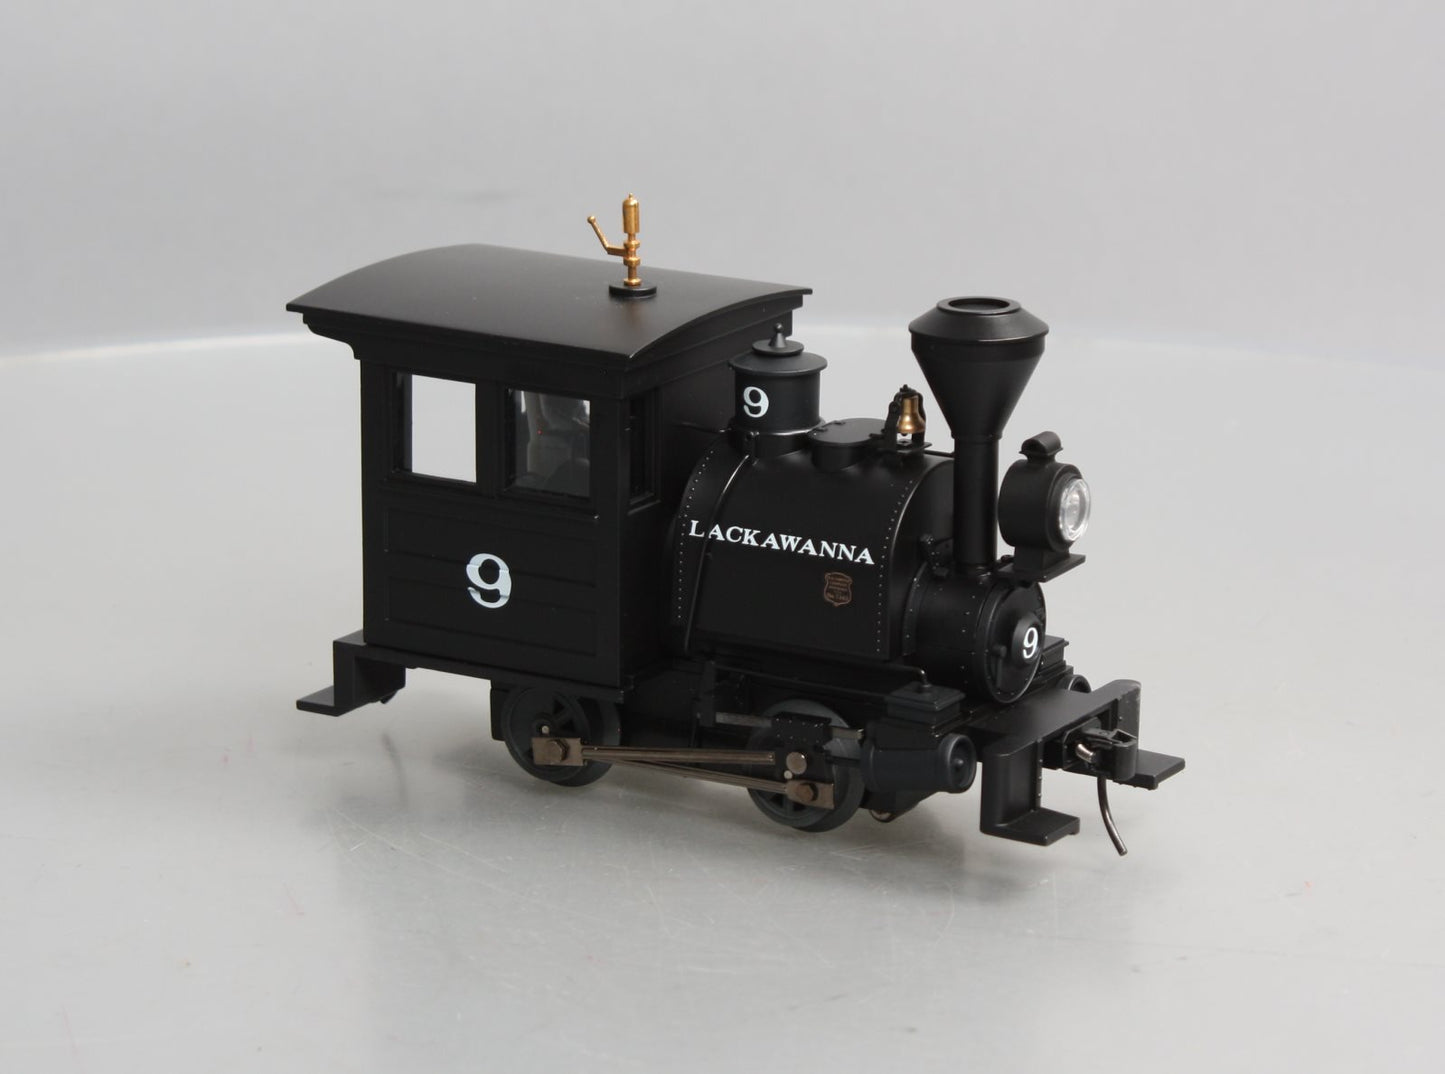 Lionel 6-21319 Lackawanna Die Cast Porter Steam Locomotive #9